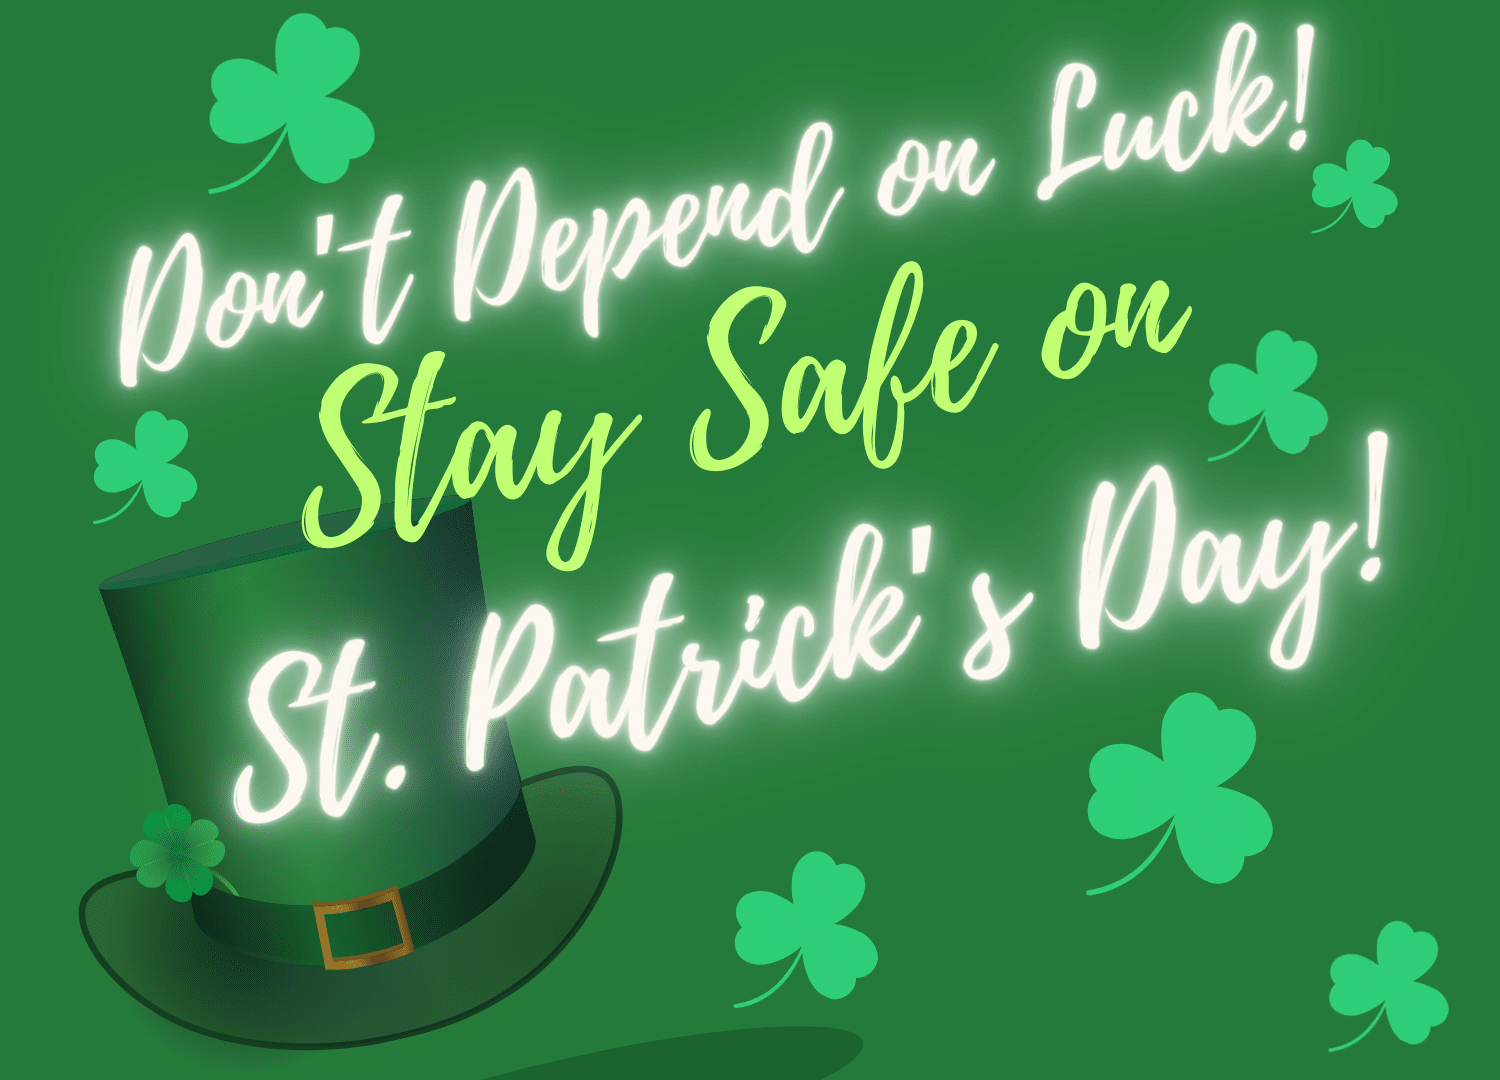 St. Patrick's Day Safety